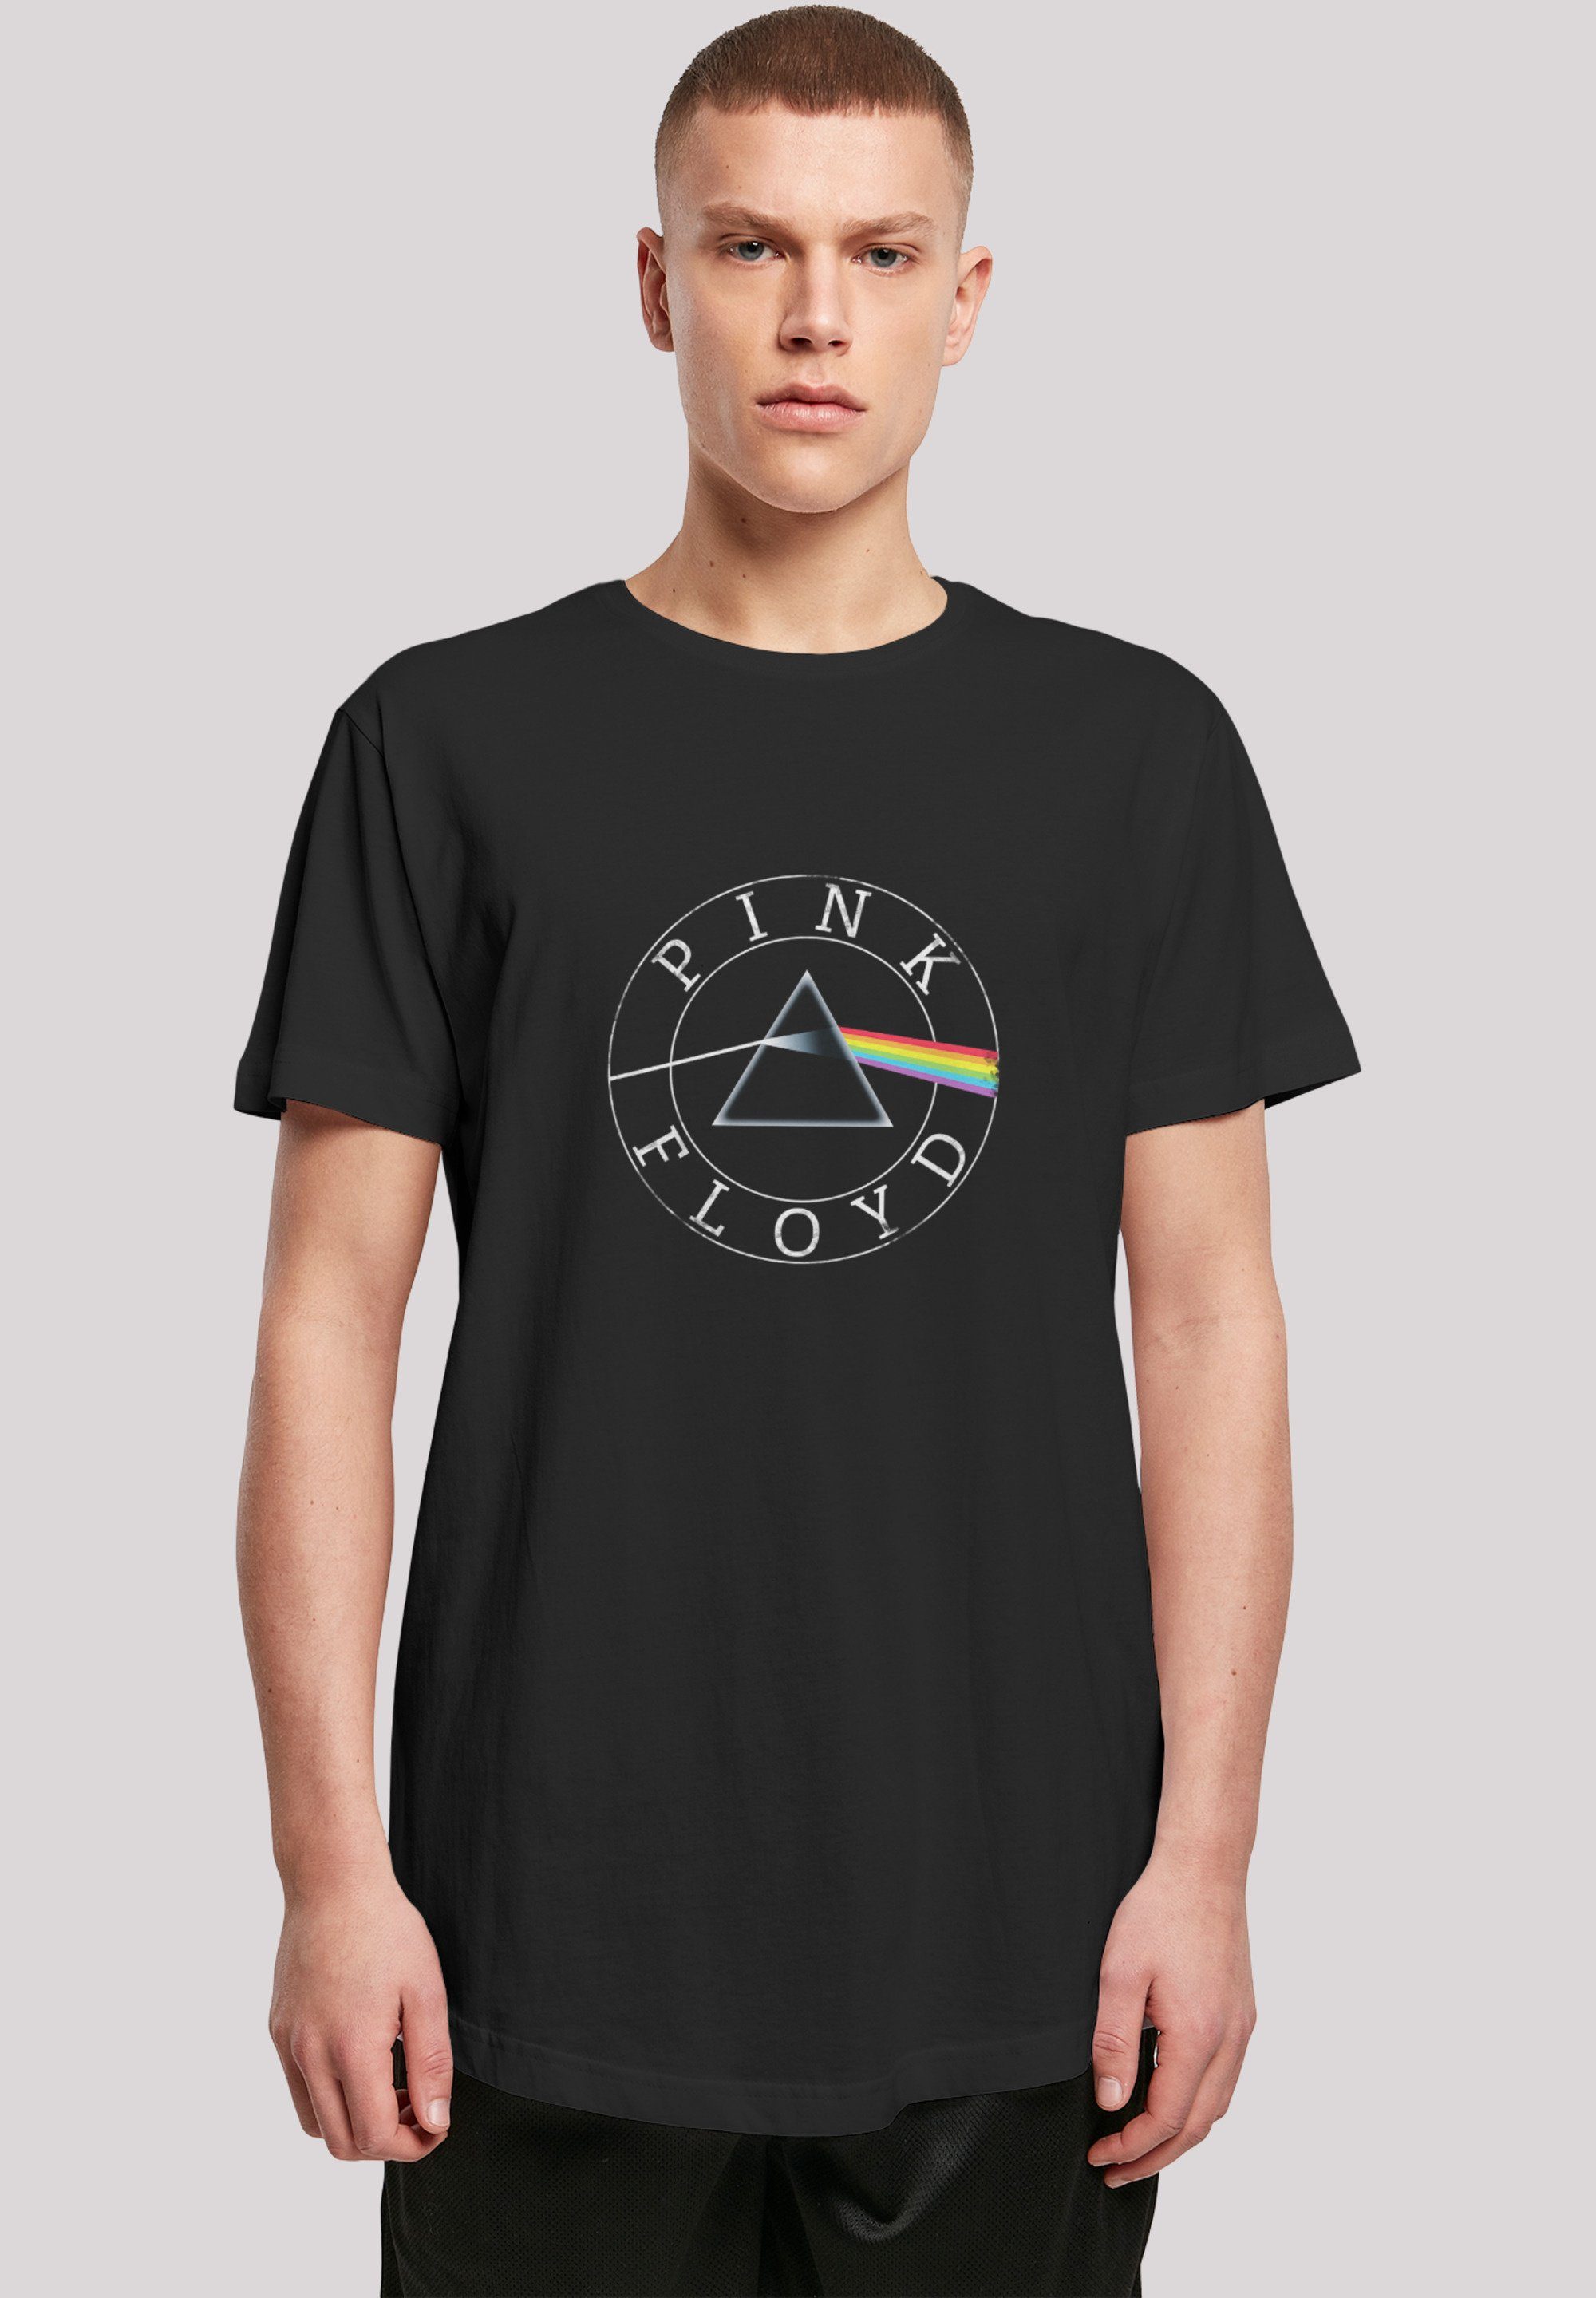 F4NT4STIC T-Shirt Pink Floyd Vintage Prism Logo Shirt Rock Musik Print,  Sehr weicher Baumwollstoff mit hohem Tragekomfort